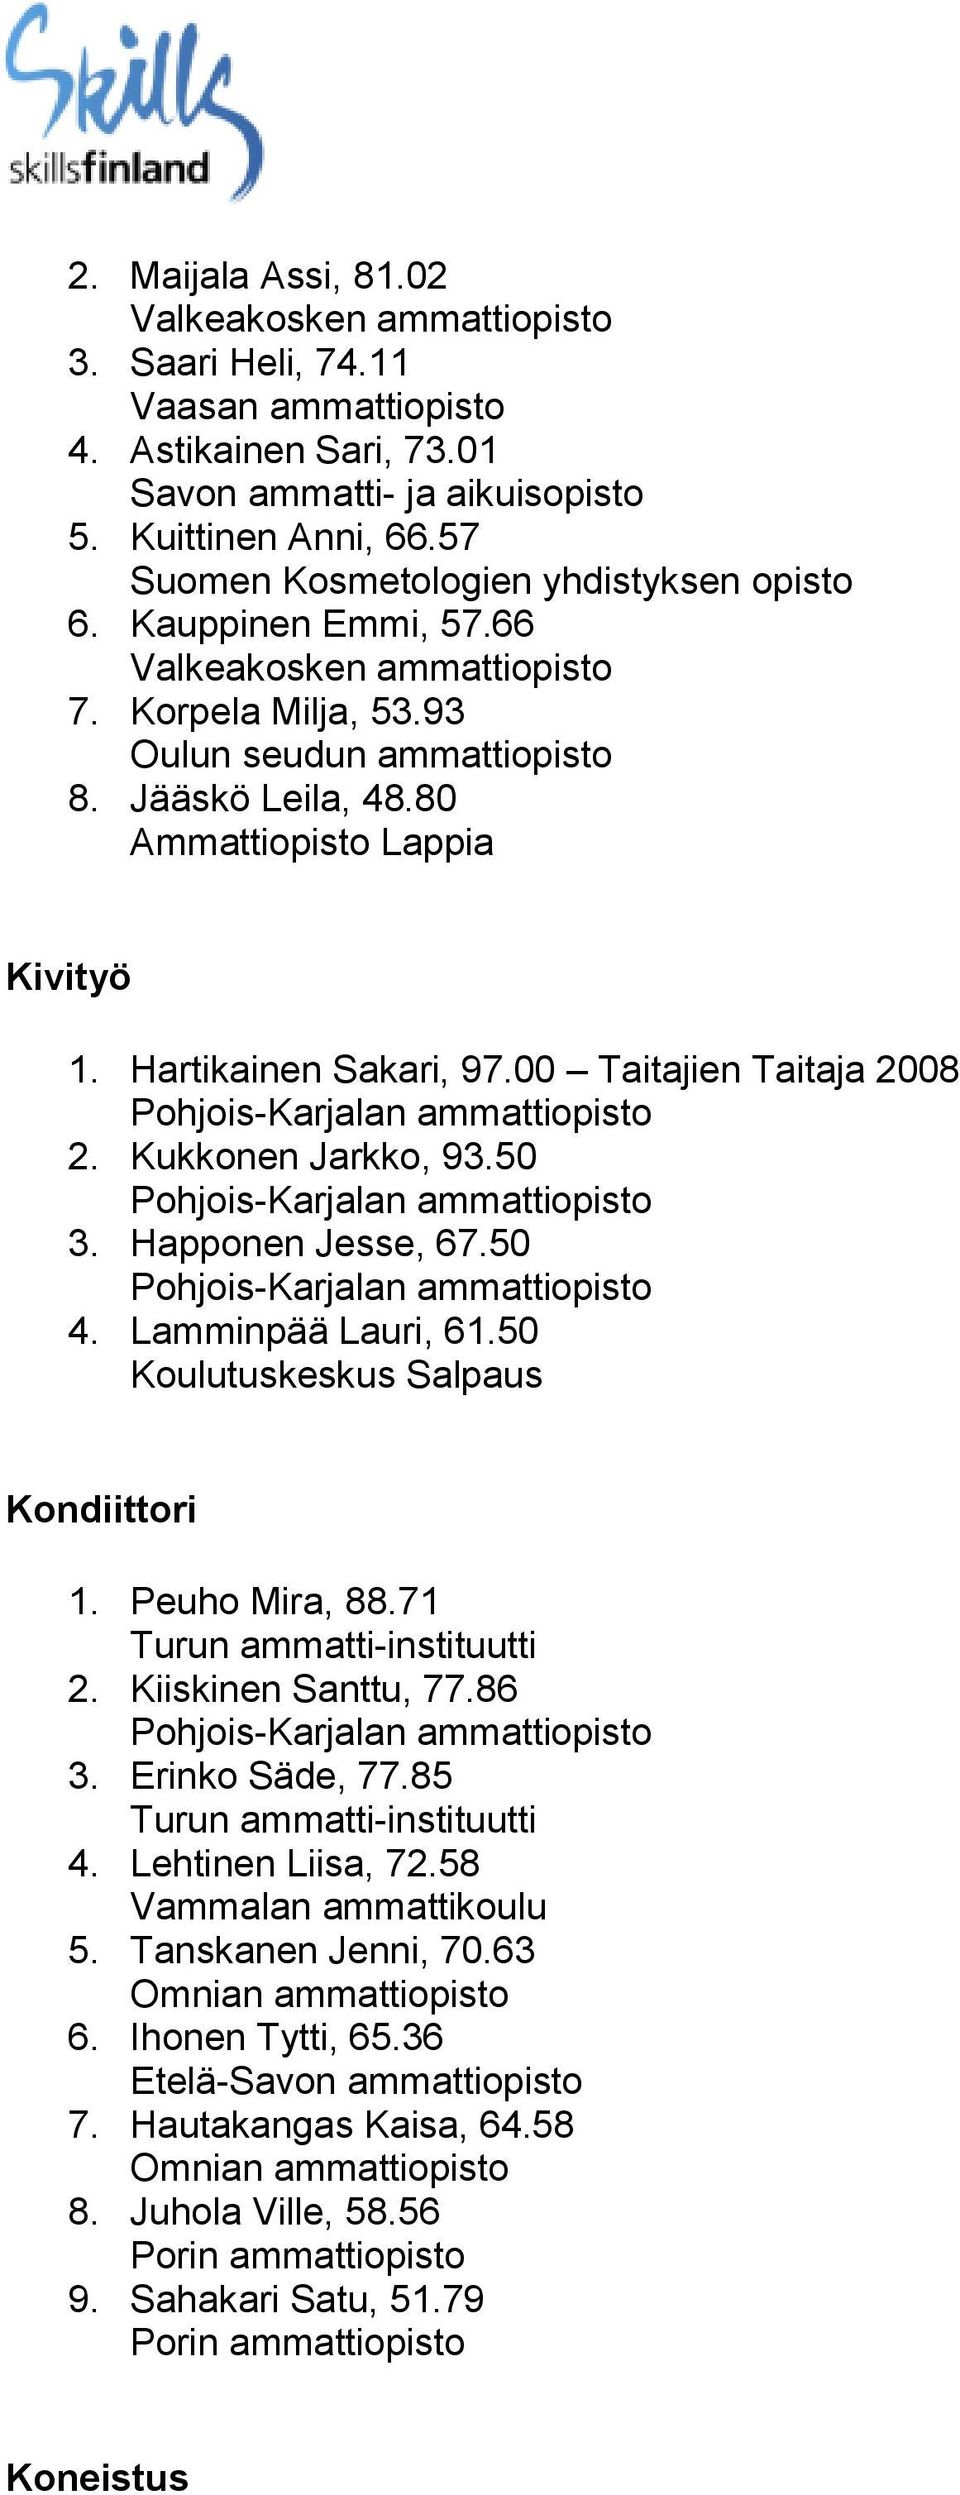 Kukkonen Jarkko, 93.50 3. Happonen Jesse, 67.50 4. Lamminpää Lauri, 61.50 Koulutuskeskus Salpaus Kondiittori 1. Peuho Mira, 88.71 2. Kiiskinen Santtu, 77.86 3. Erinko Säde, 77.